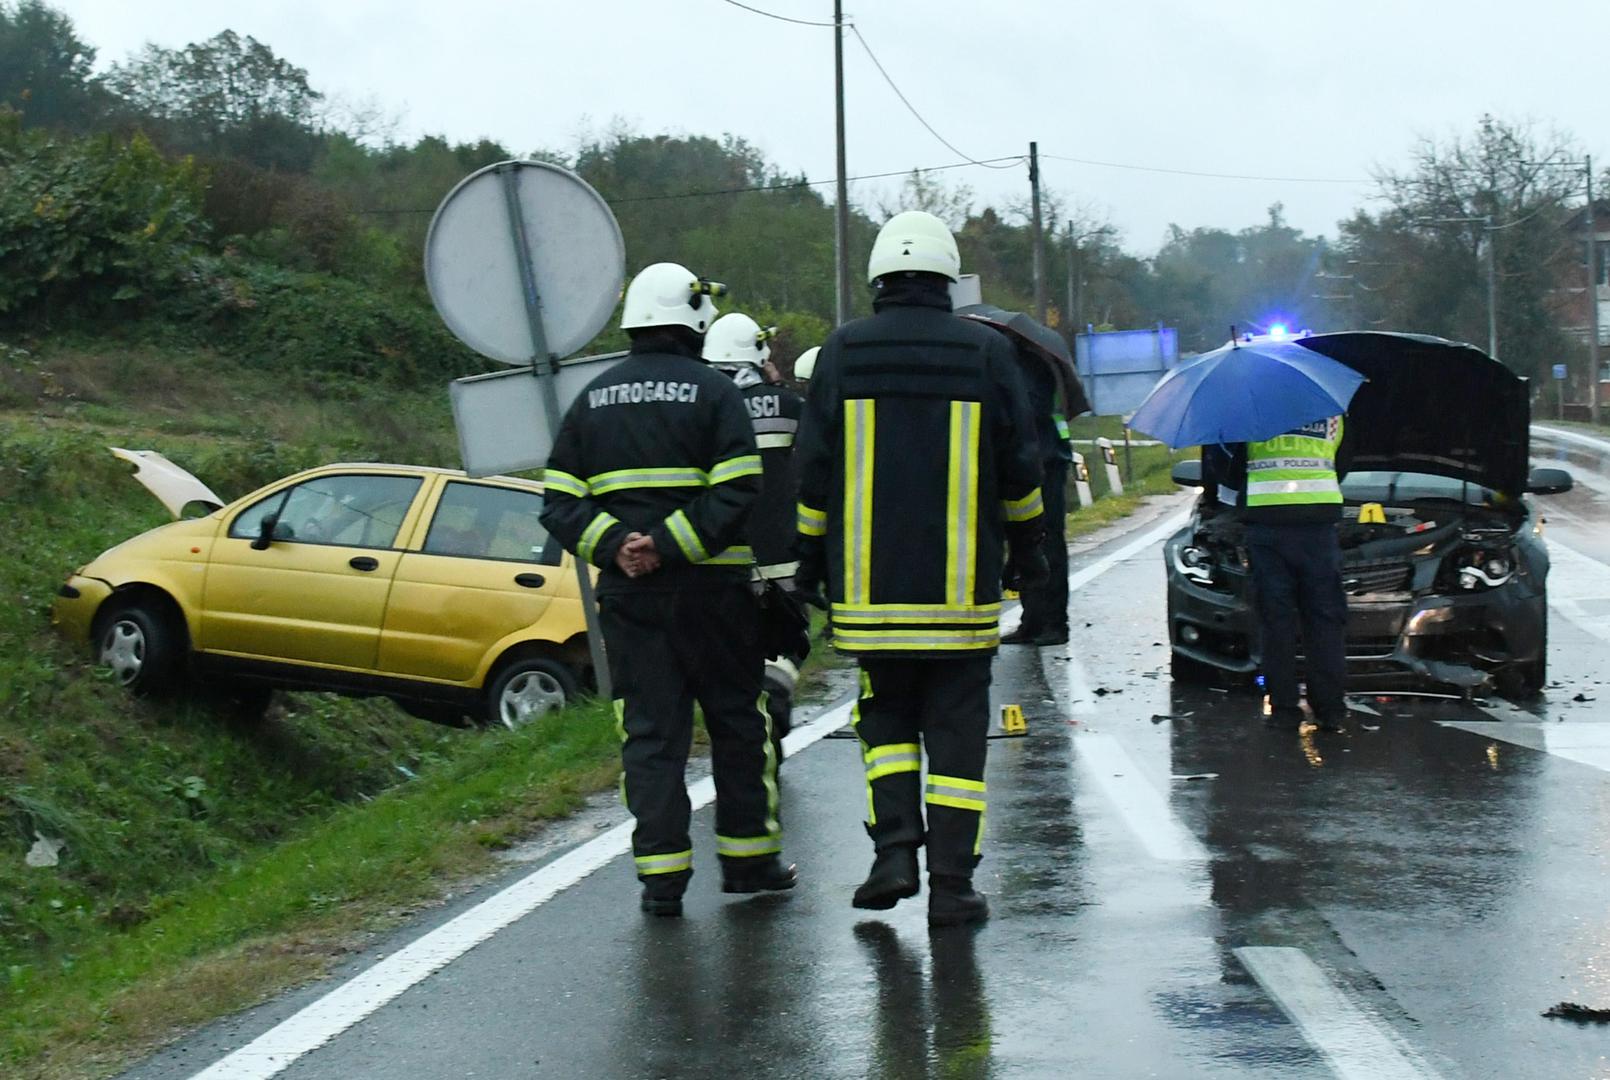 10.10.2021., Zazina - U prometnoj nesreci koja se oko 16,35 sati dogodila na drzavnoj cesti Sisak-Zagreb sudjelovala su dva osobna automobila, pri cemu je jedna osoba poginula. Policija obavlja ocevid

